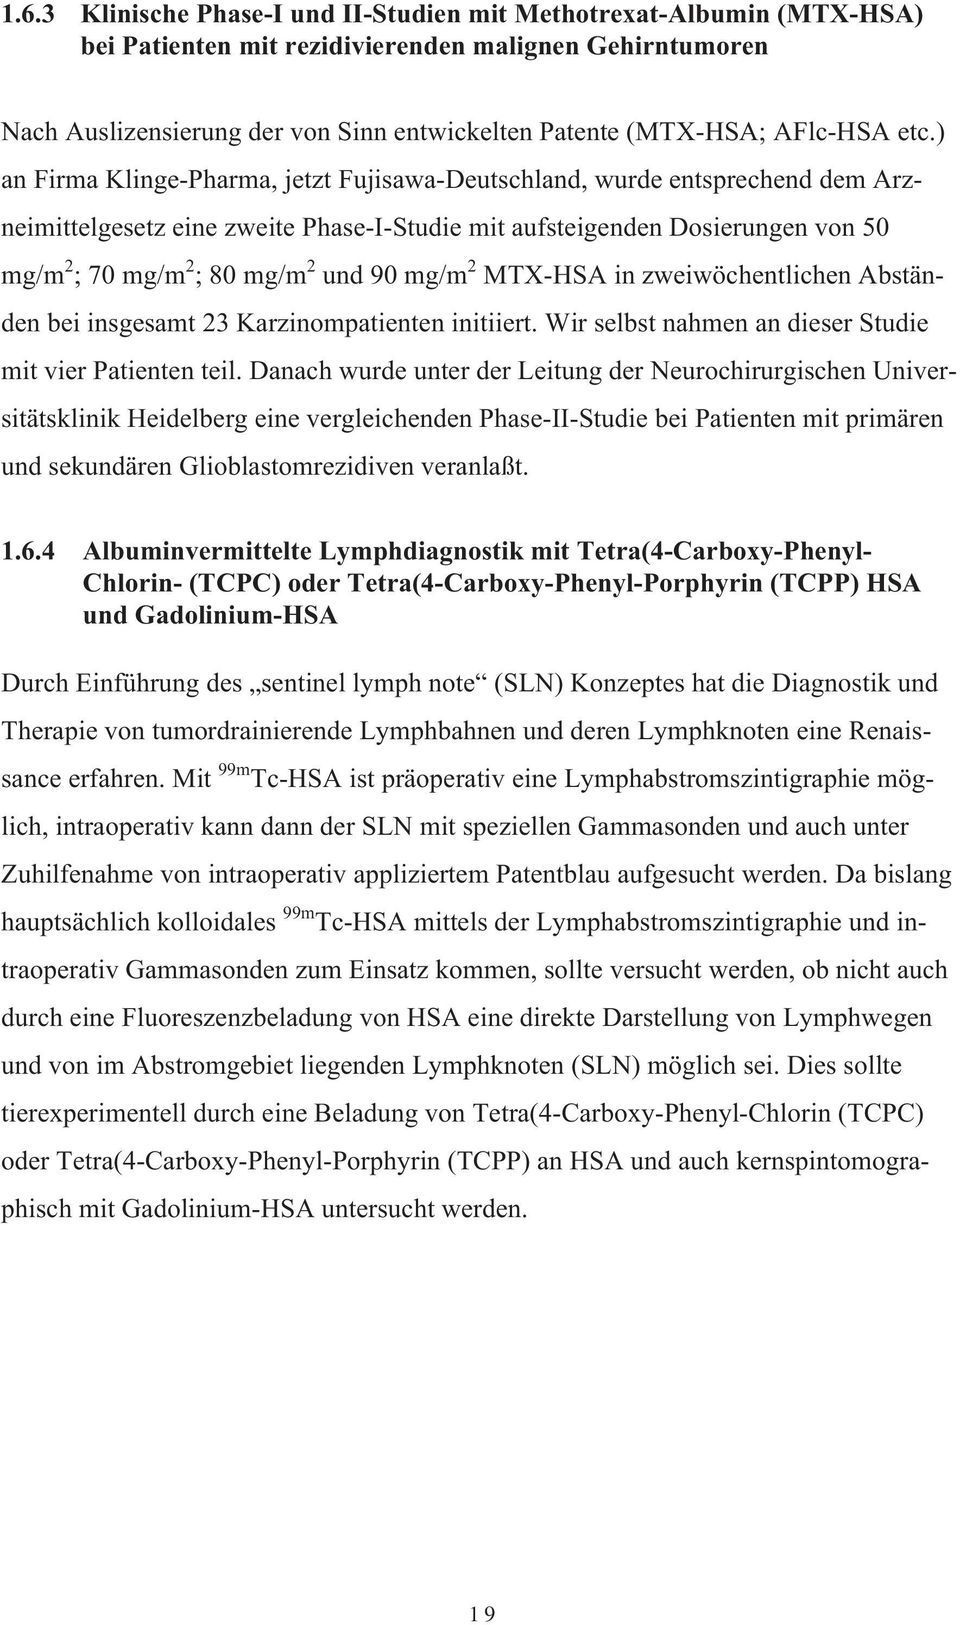 ) an Firma Klinge-Pharma, jetzt Fujisawa-Deutschland, wurde entsprechend dem Arzneimittelgesetz eine zweite Phase-I-Studie mit aufsteigenden Dosierungen von 50 mg/m 2 ; 70 mg/m 2 ; 80 mg/m 2 und 90